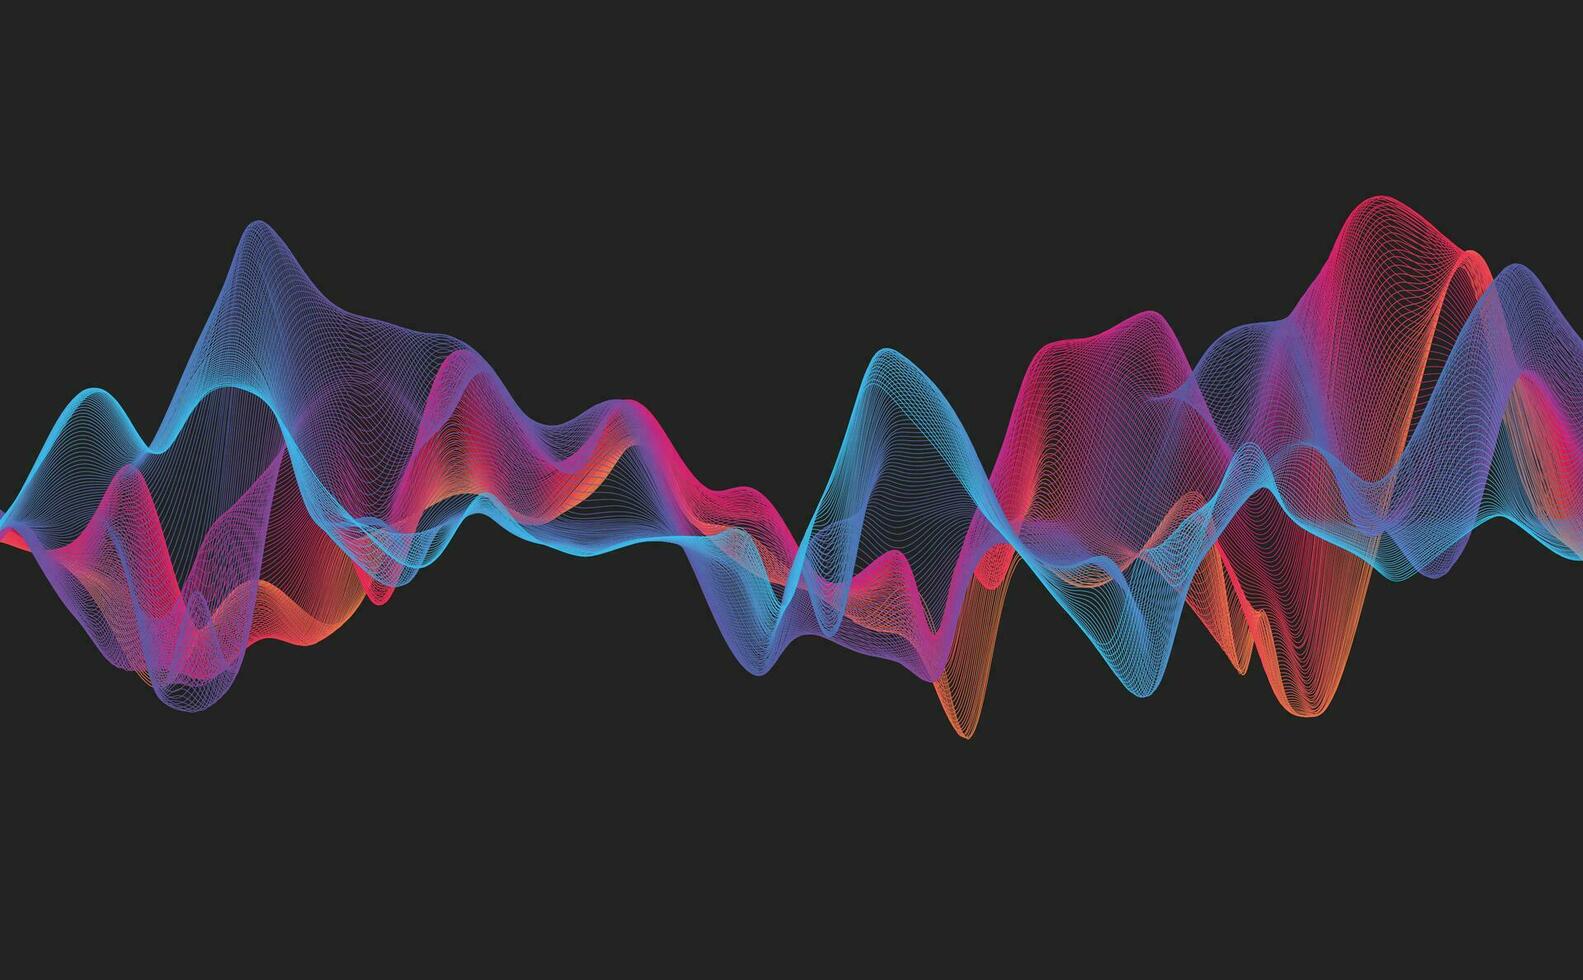 Vektor abstrakter Hintergrund mit farbigen dynamischen Wellen, Linien und Partikeln. Illustration passend für Design